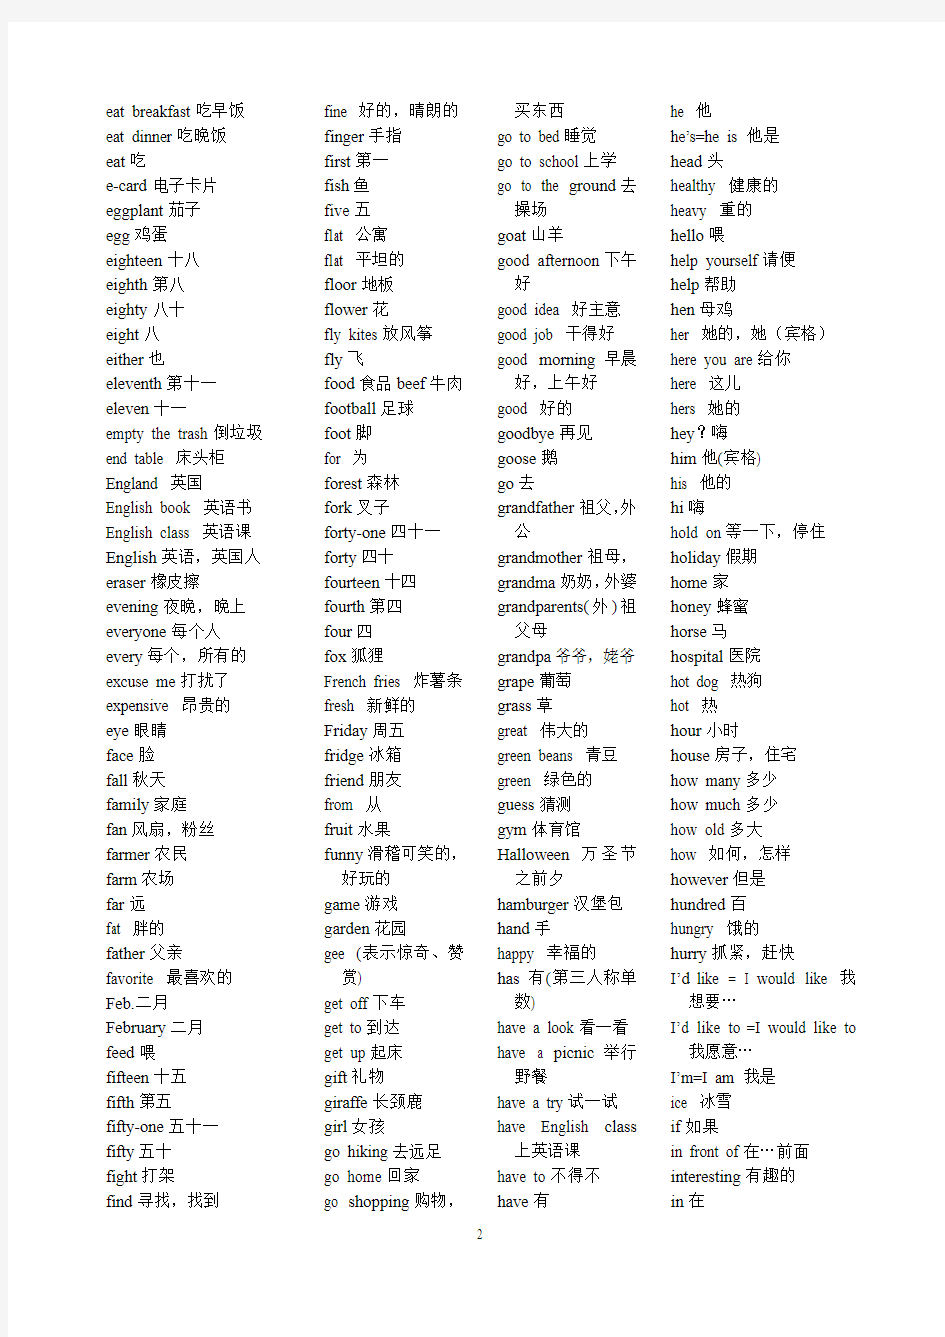 牛津版小学六年级英语词汇表(排序)